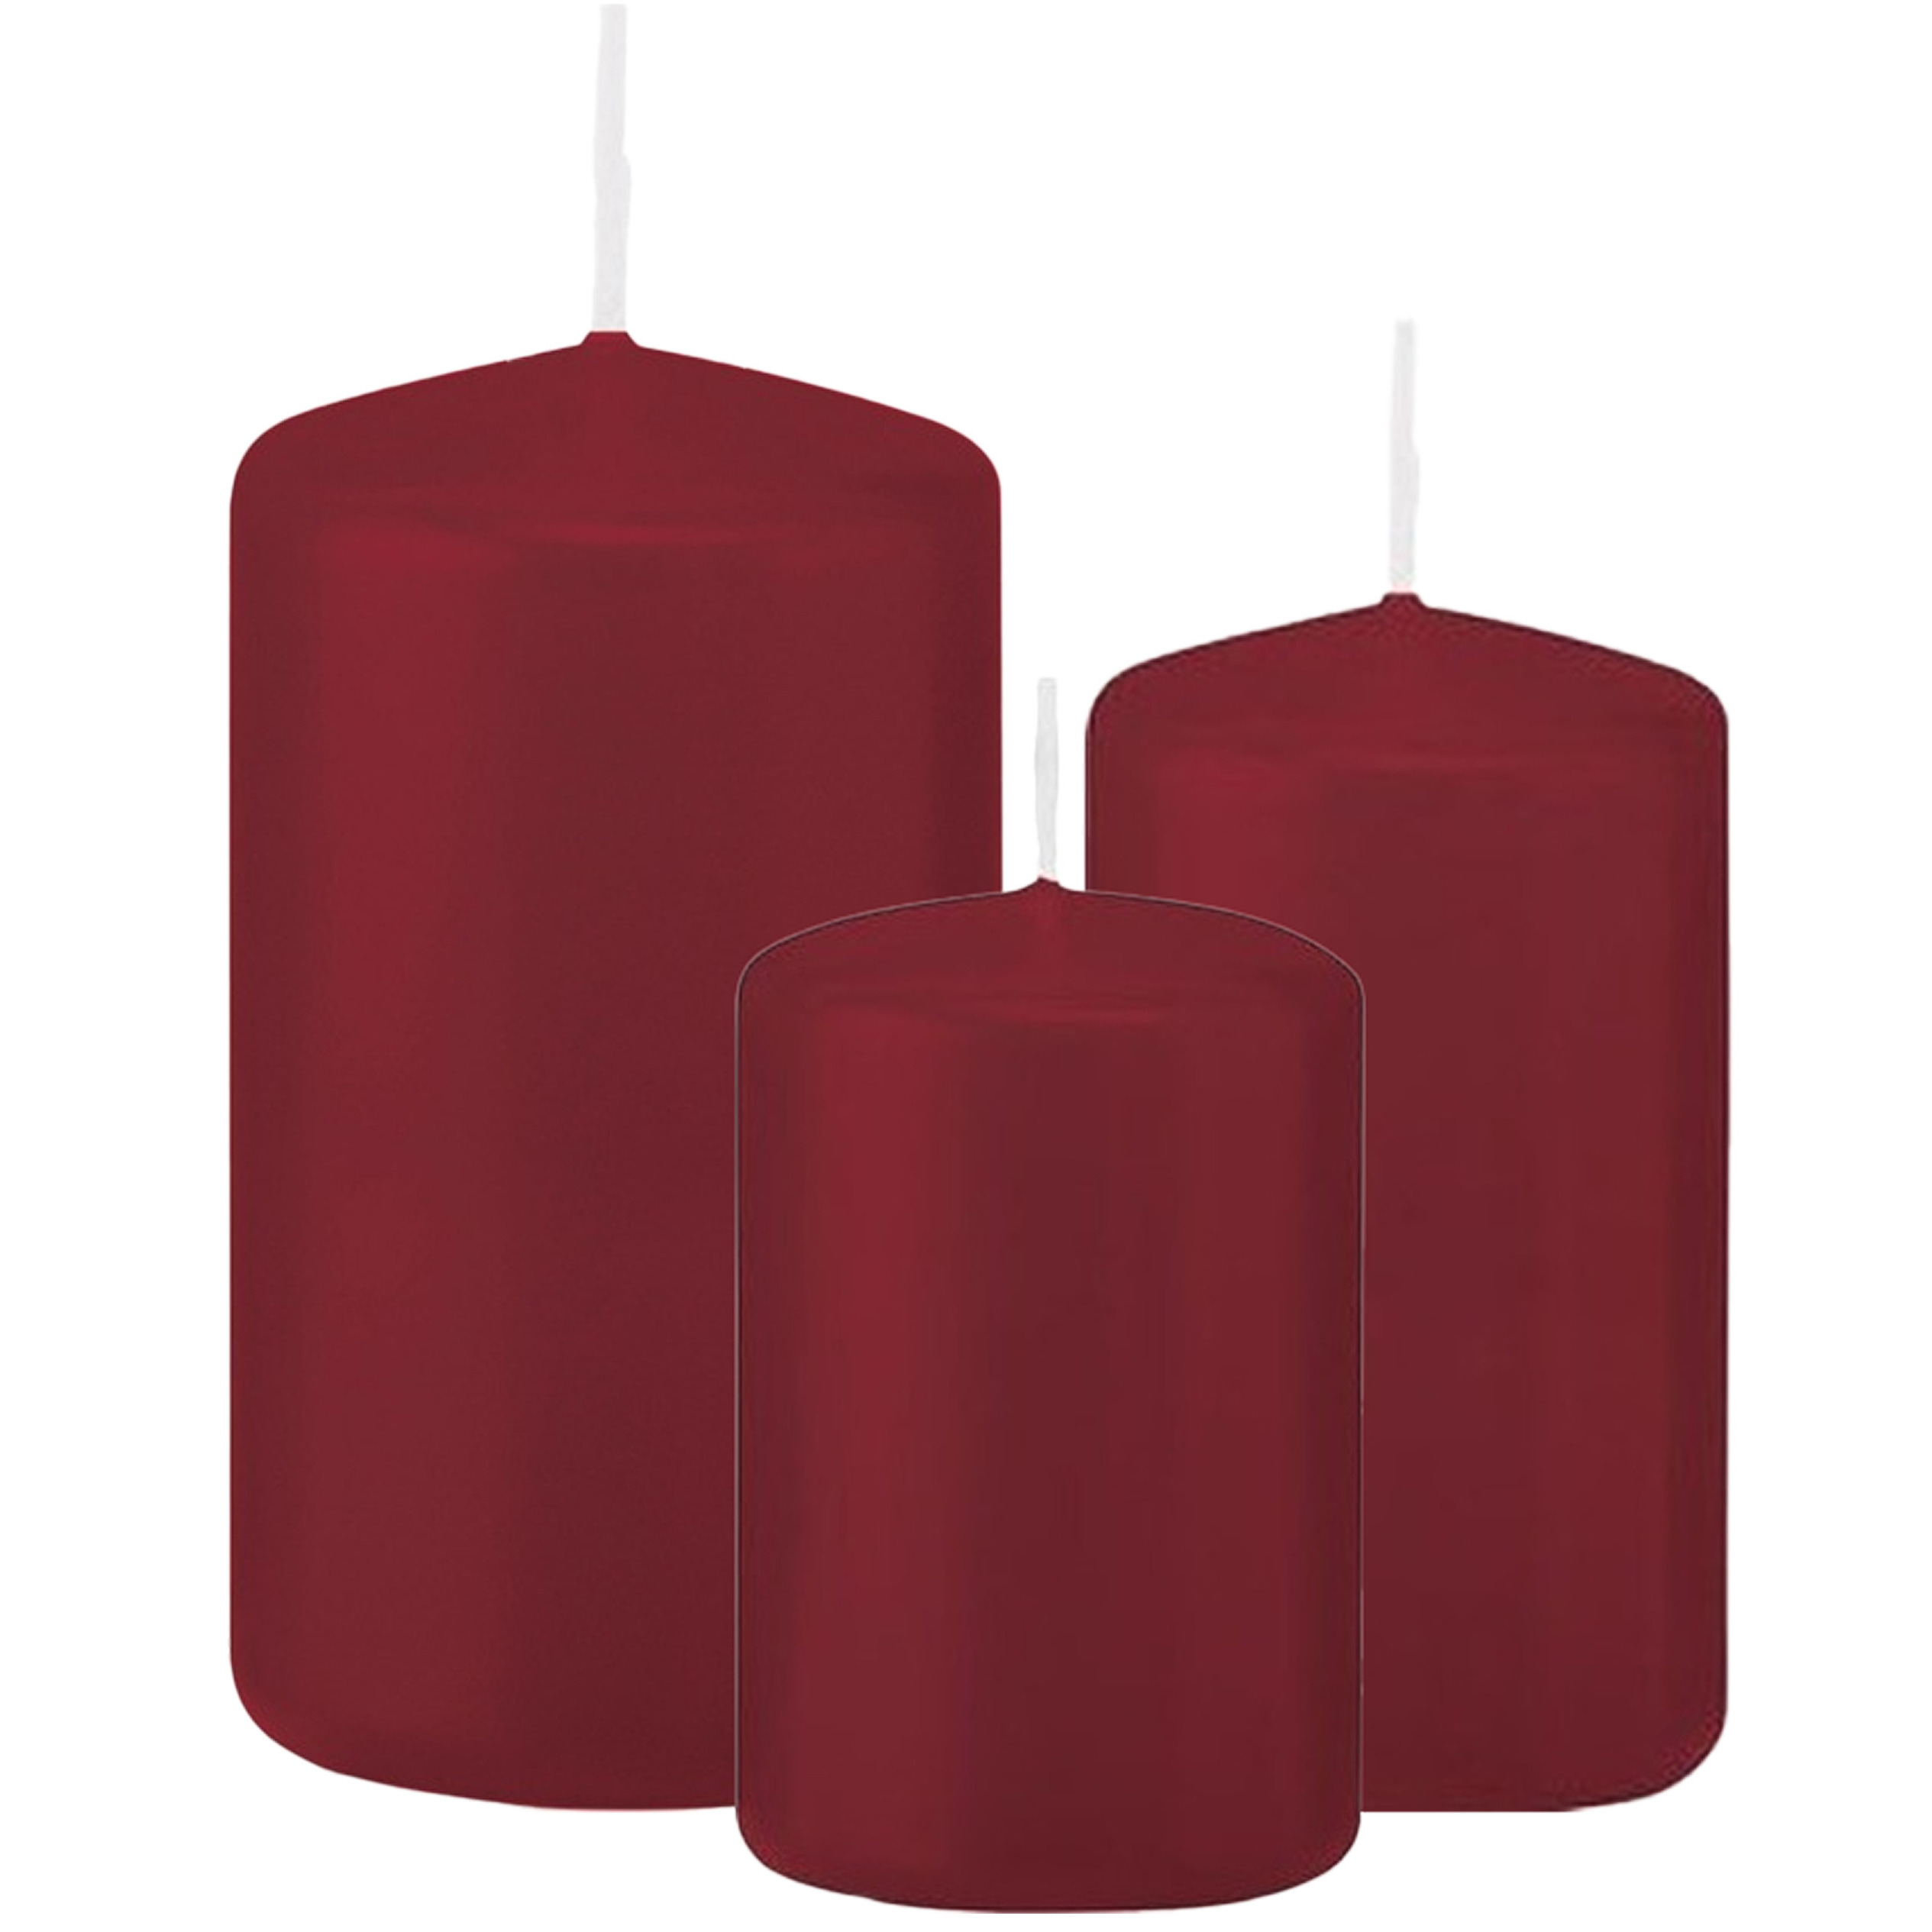 Stompkaarsen set van 3x stuks bordeaux rood 8-10-12 cm -